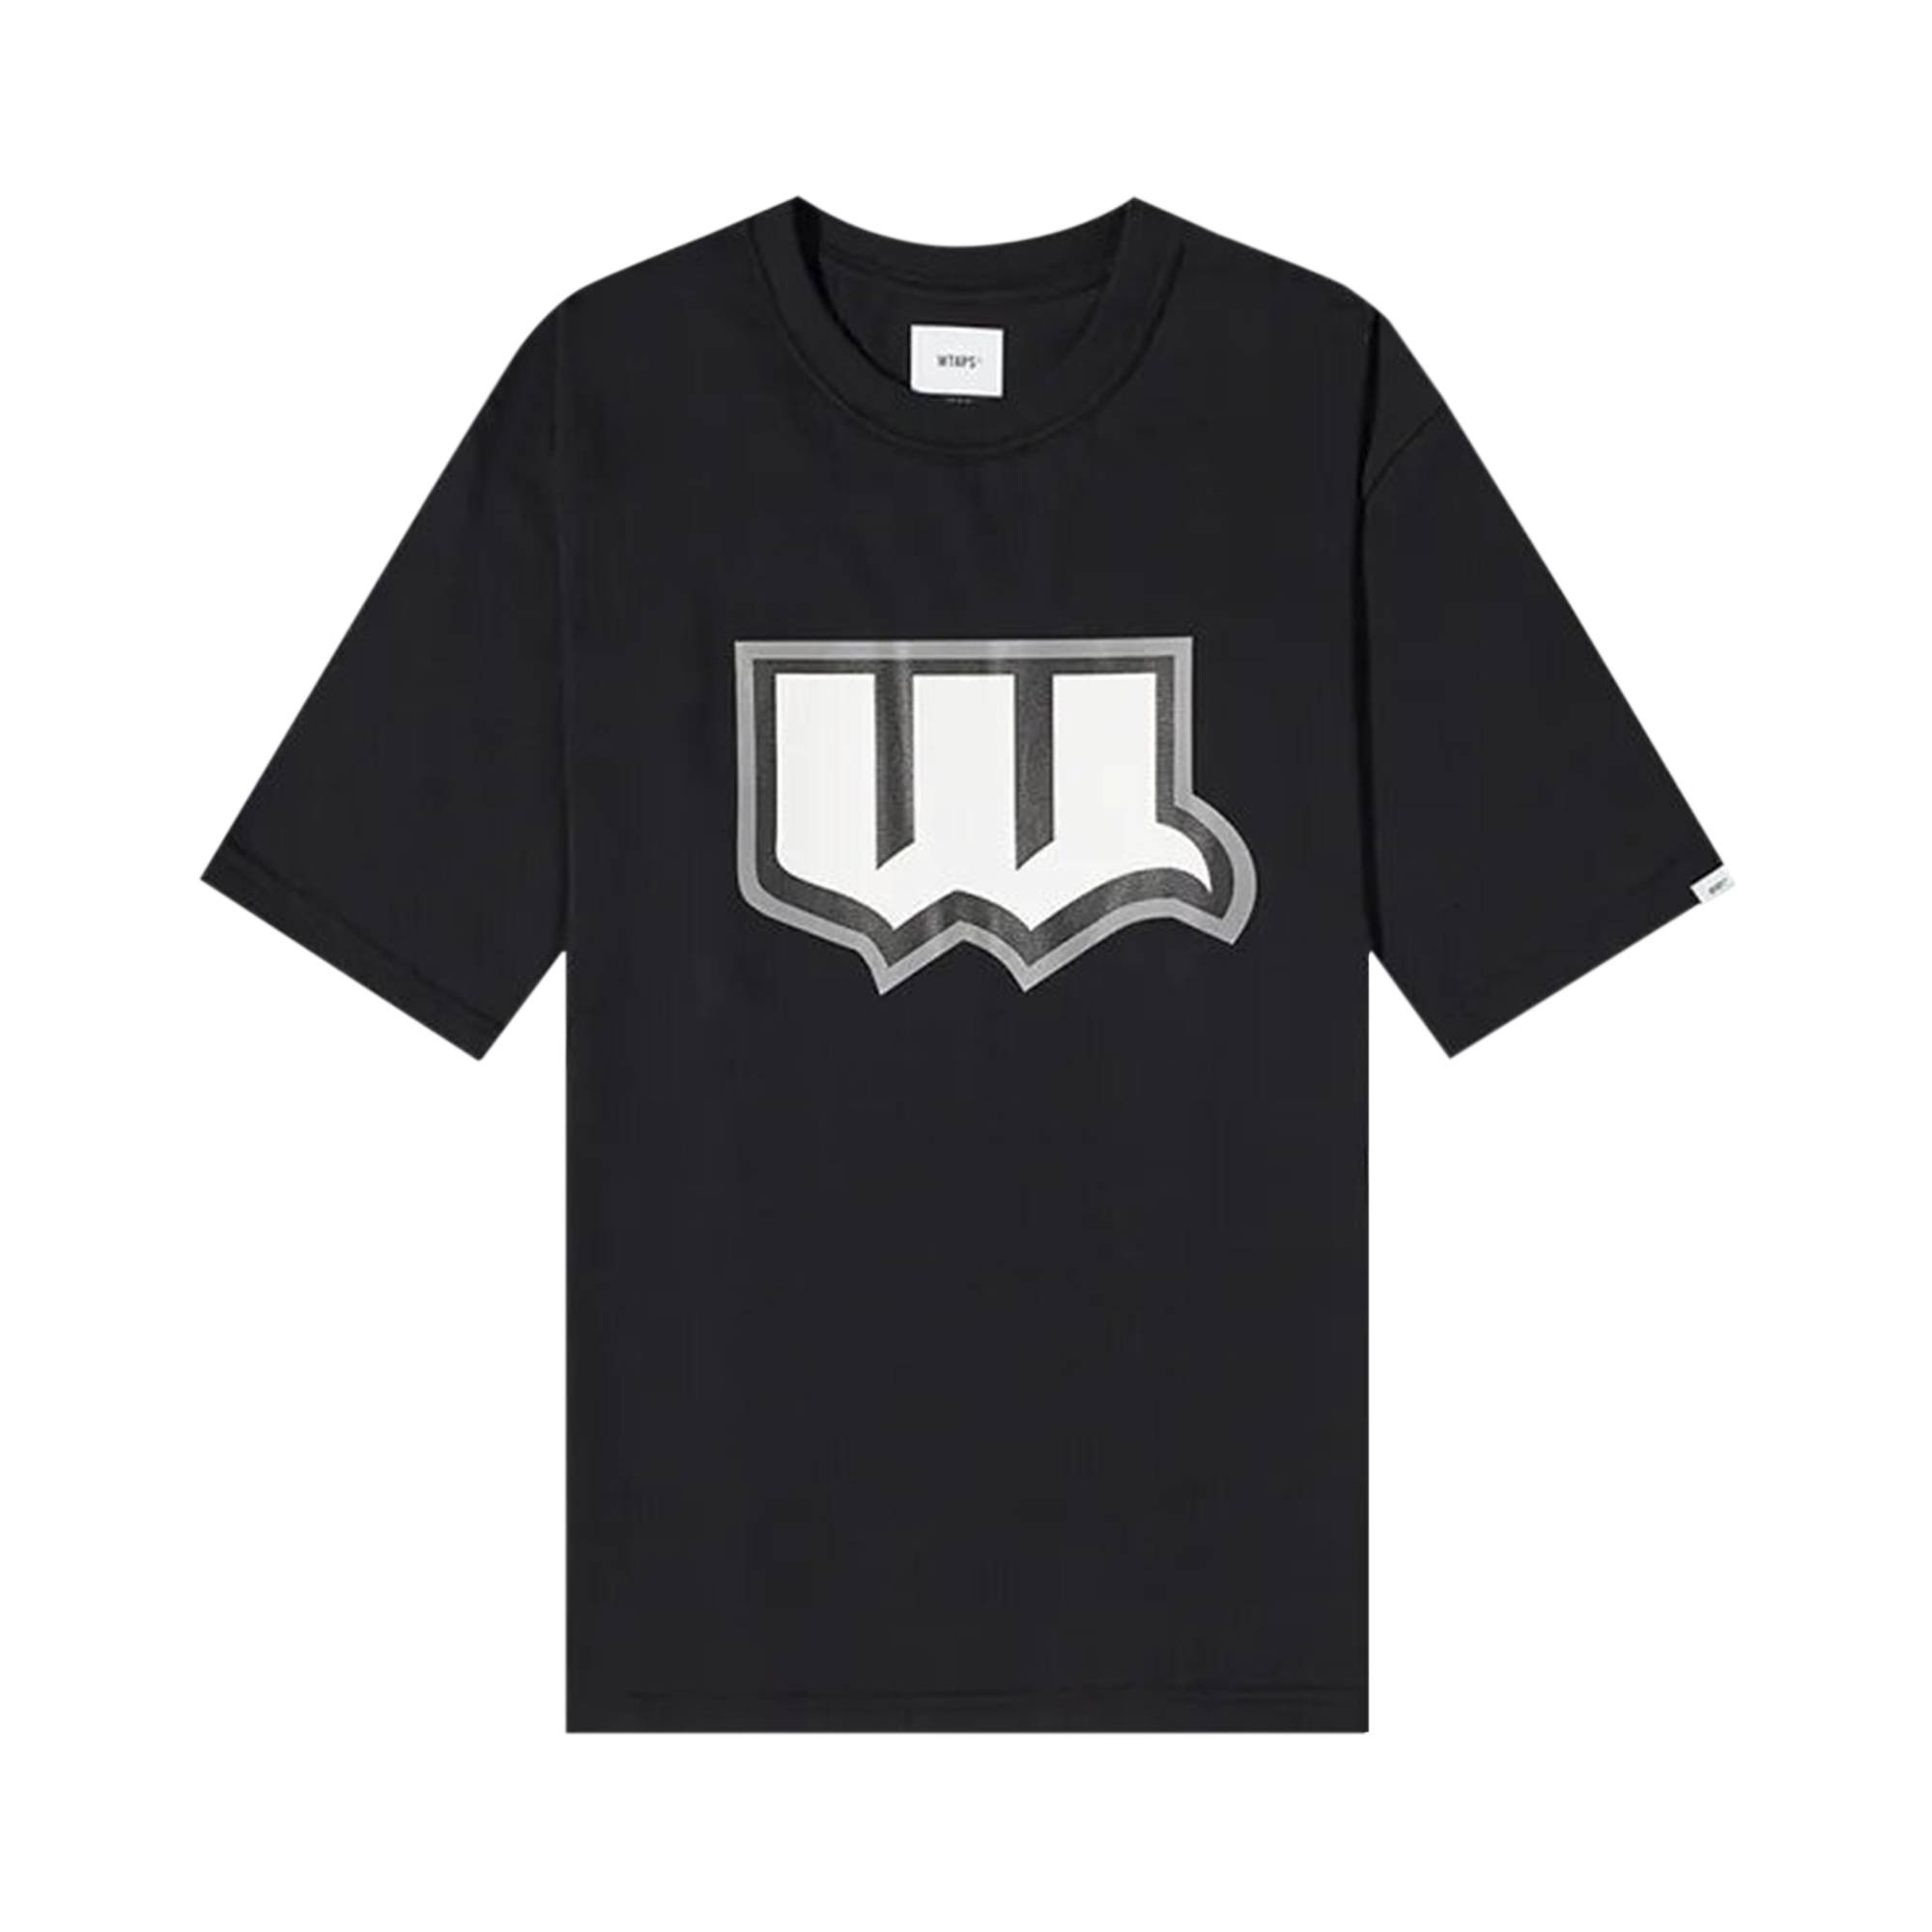 WTAPS Evil Tip T-Shirt 'Black' - 1